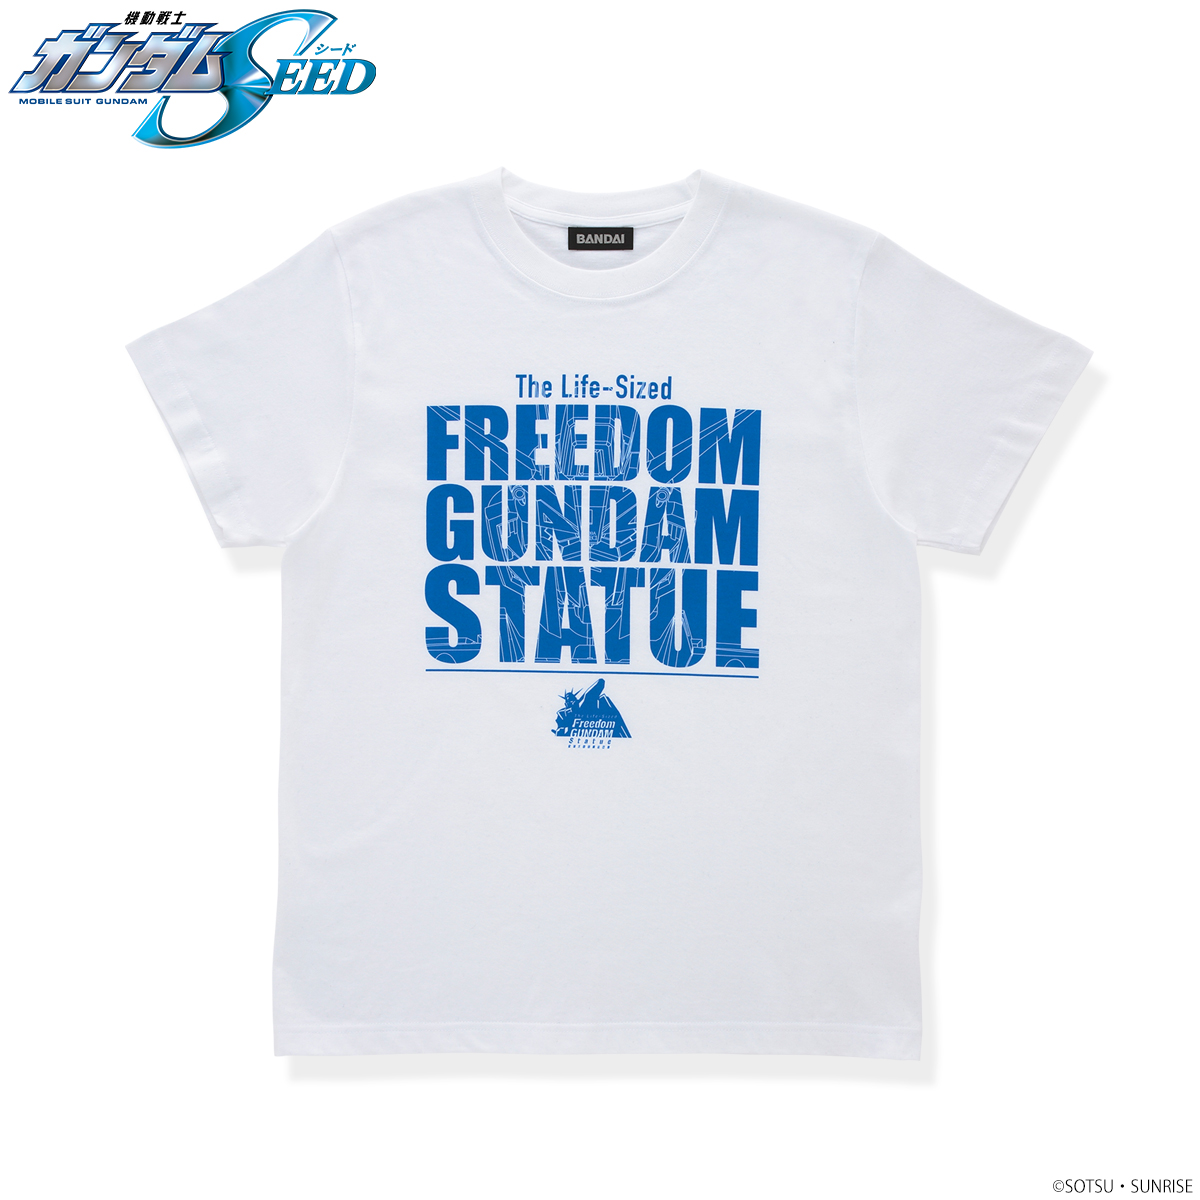 Life-sized Freedom Gundam T-shirt—Mobile Suit Gundam SEED